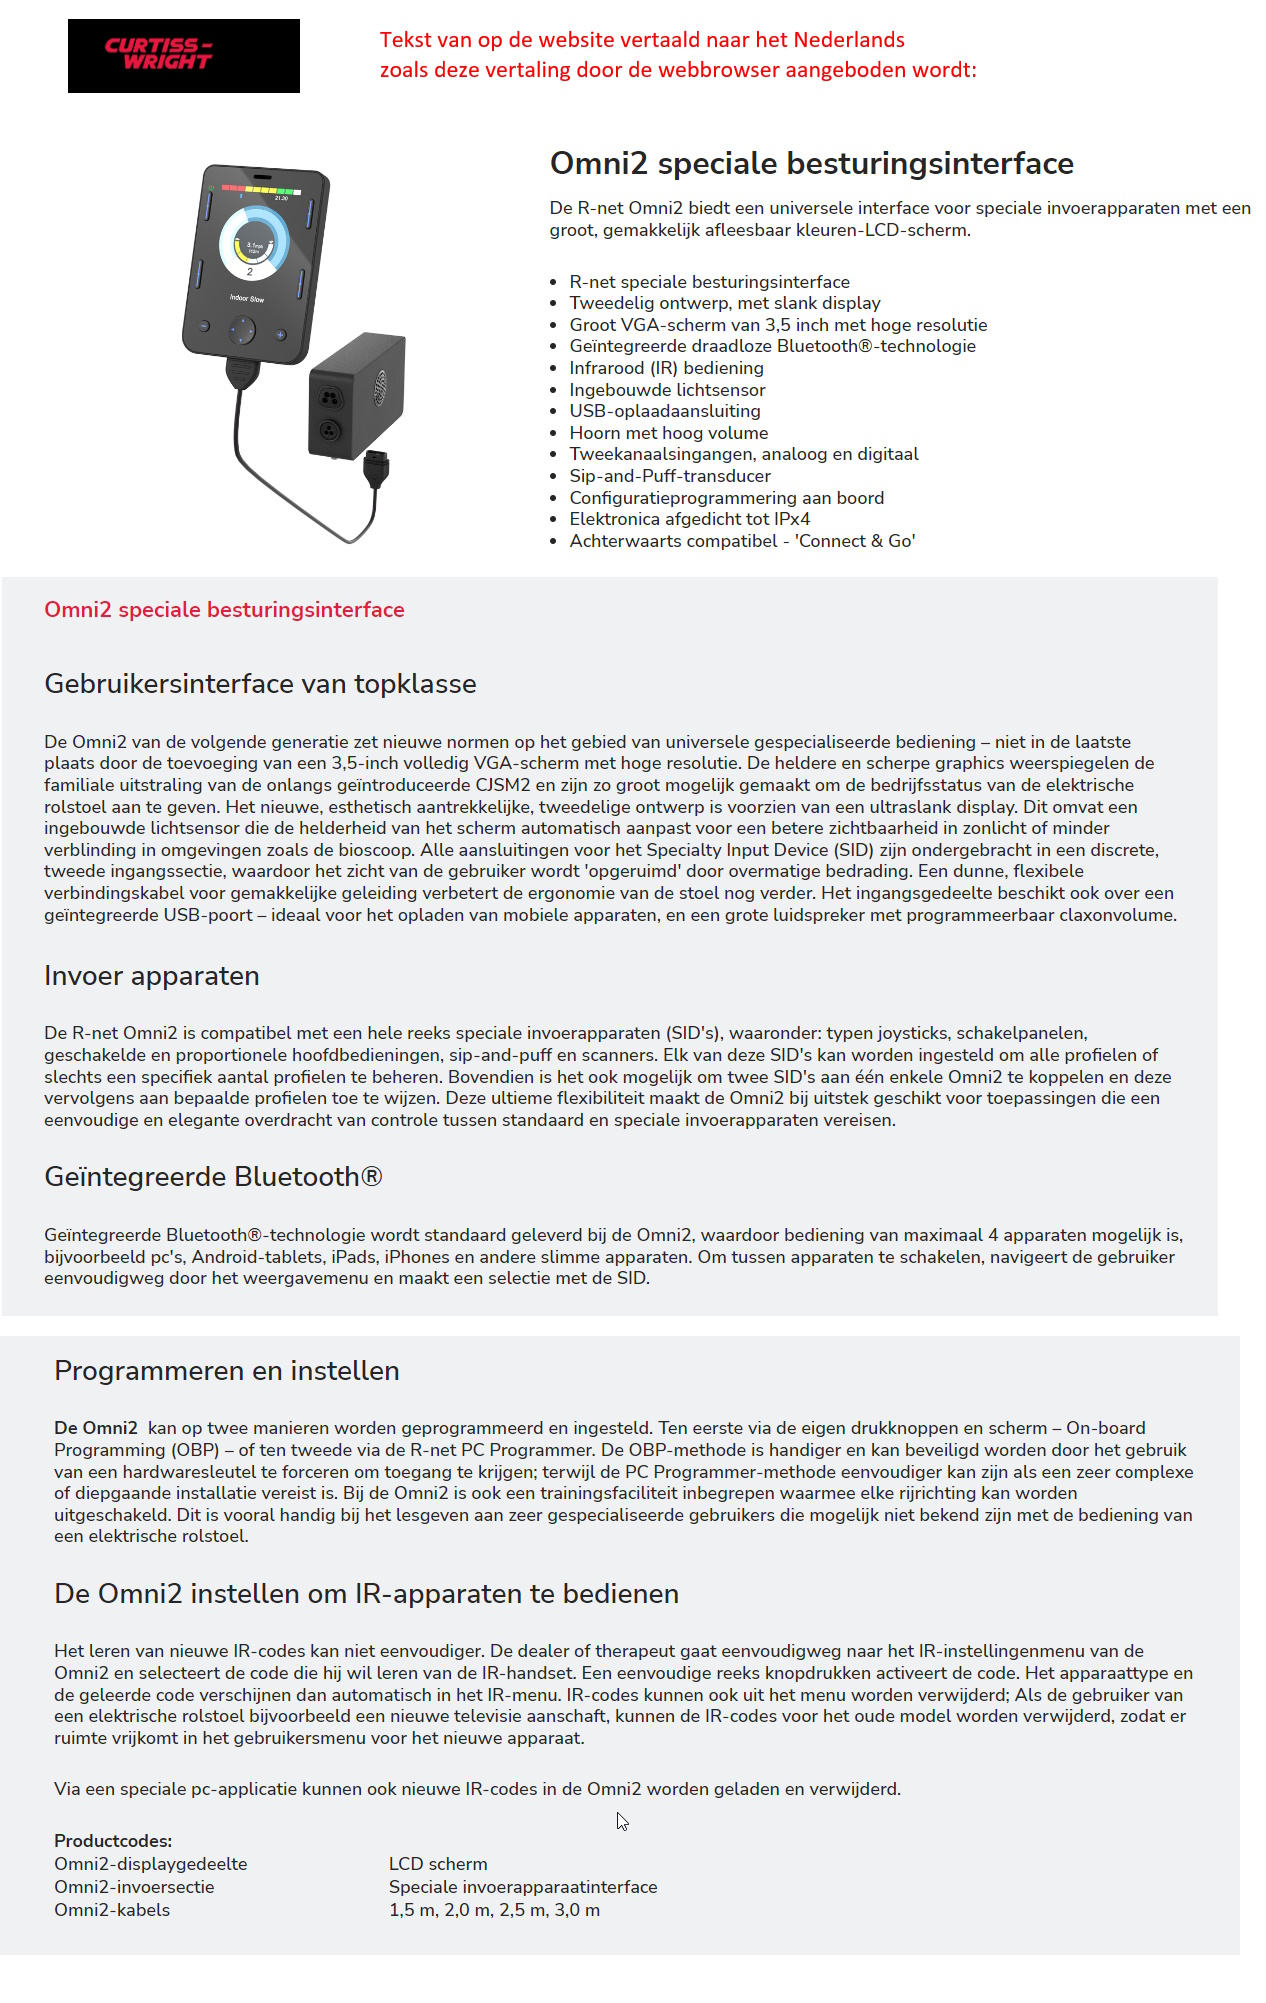 toegevoegd document 4 van Sunrise Medical uitvoering Omni2  bediening incl. Bluetooth en Infrarood  